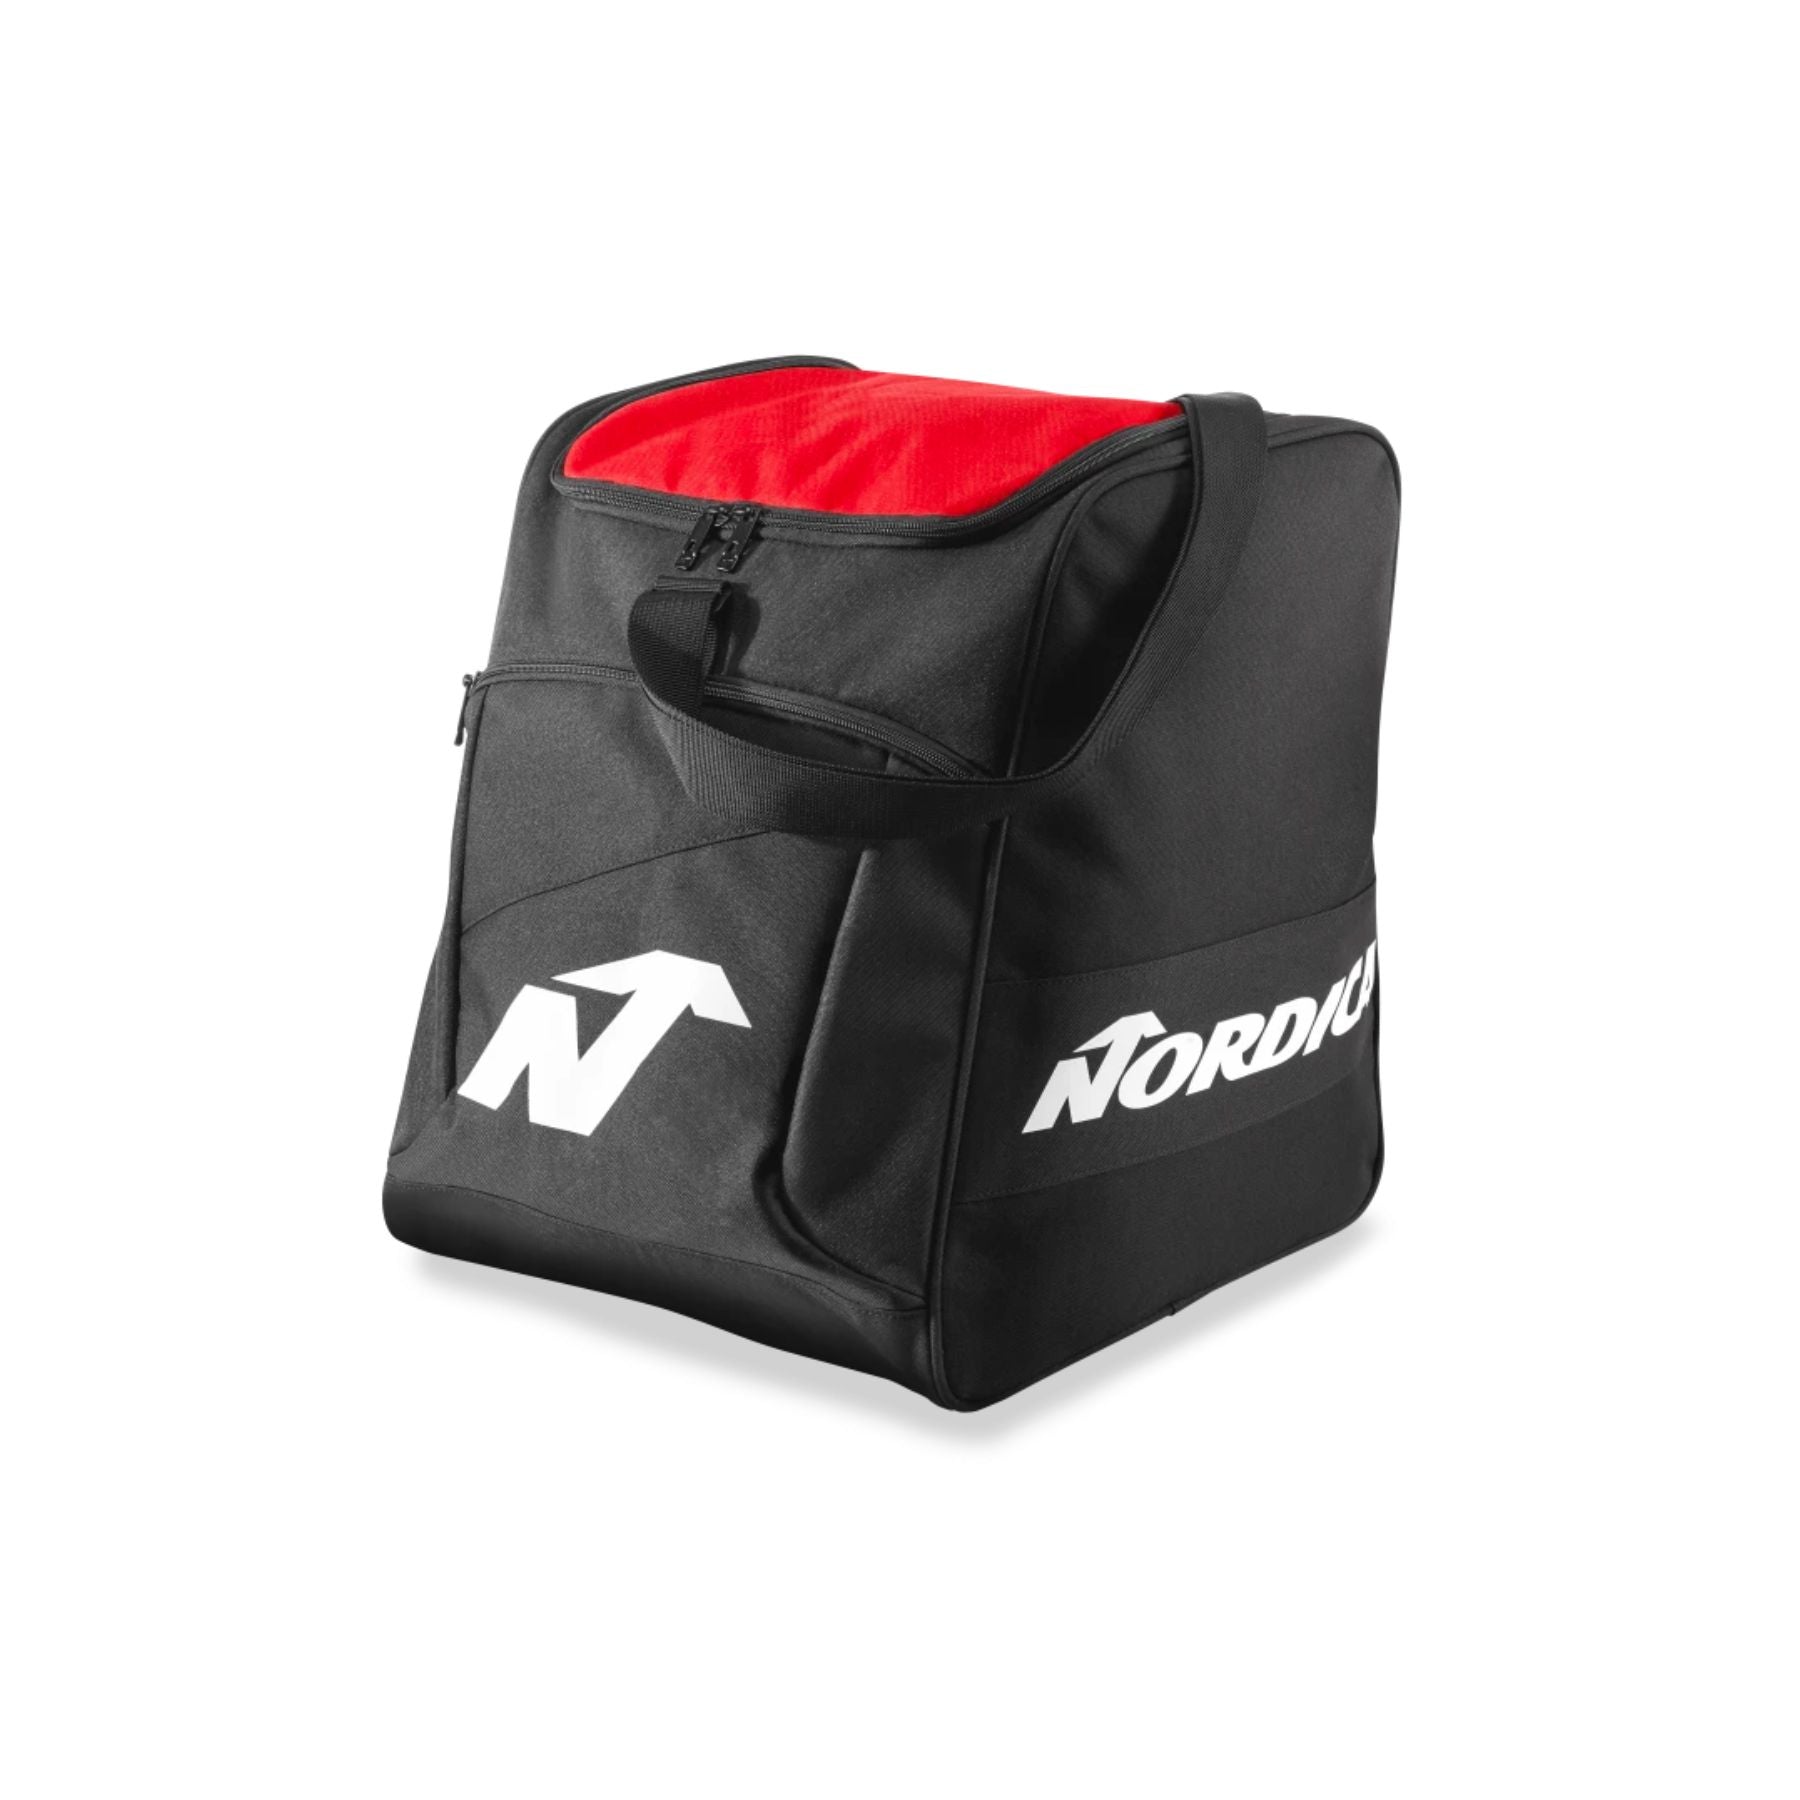 Nordica Boot Bag